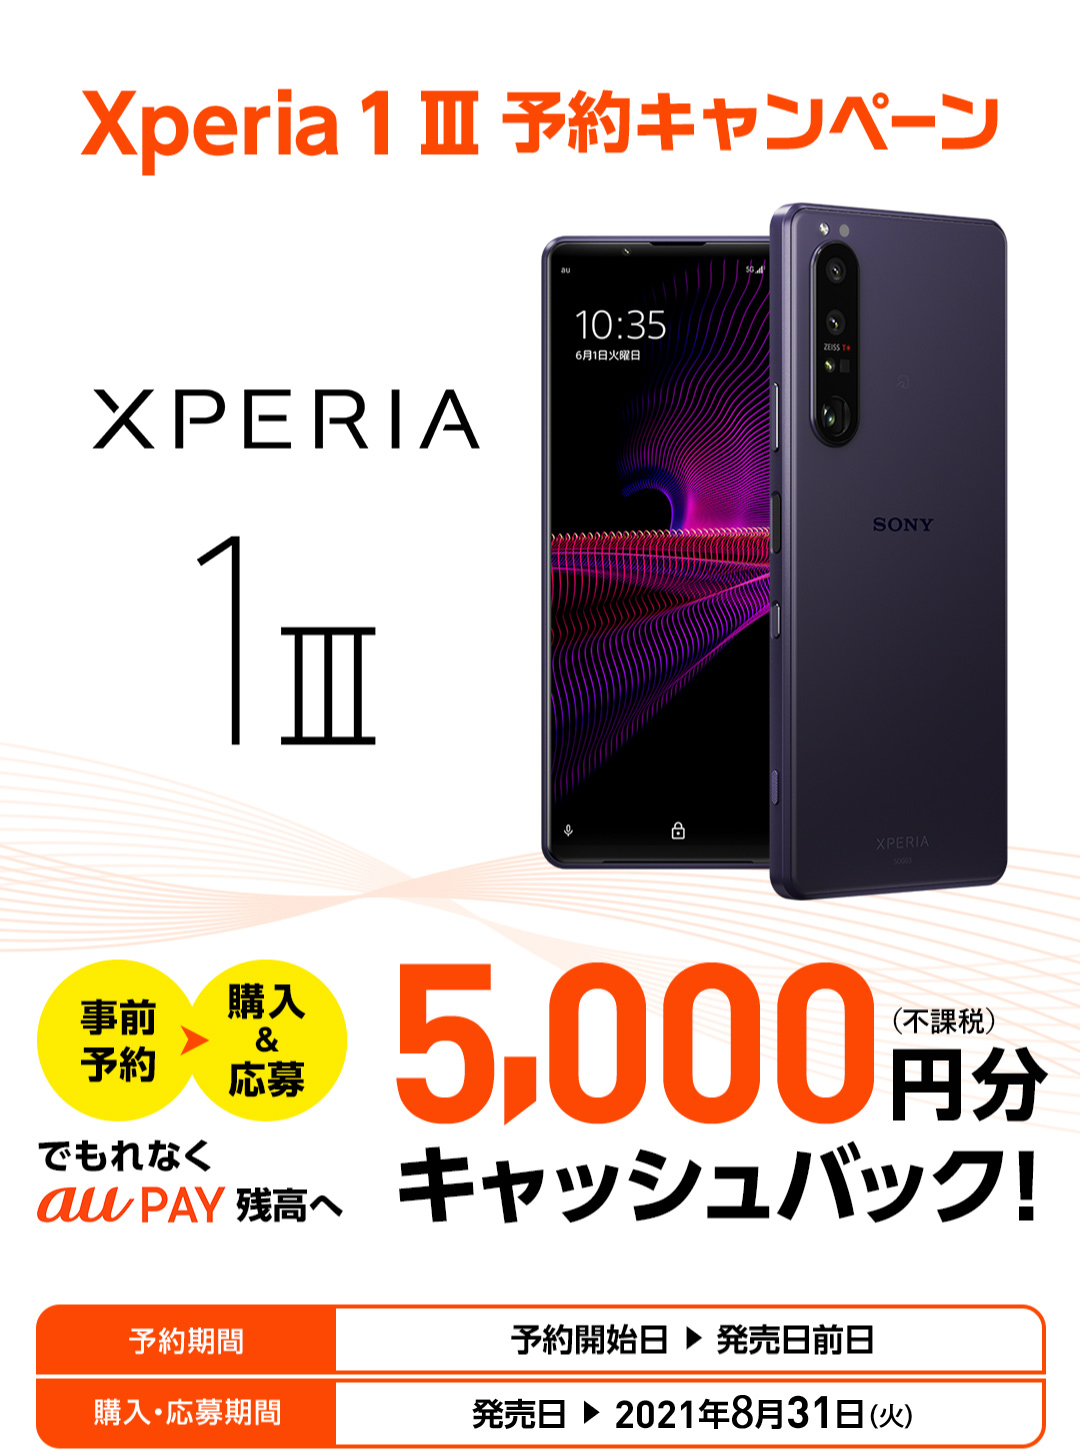 Xperia 1 III 予約キャンペーン